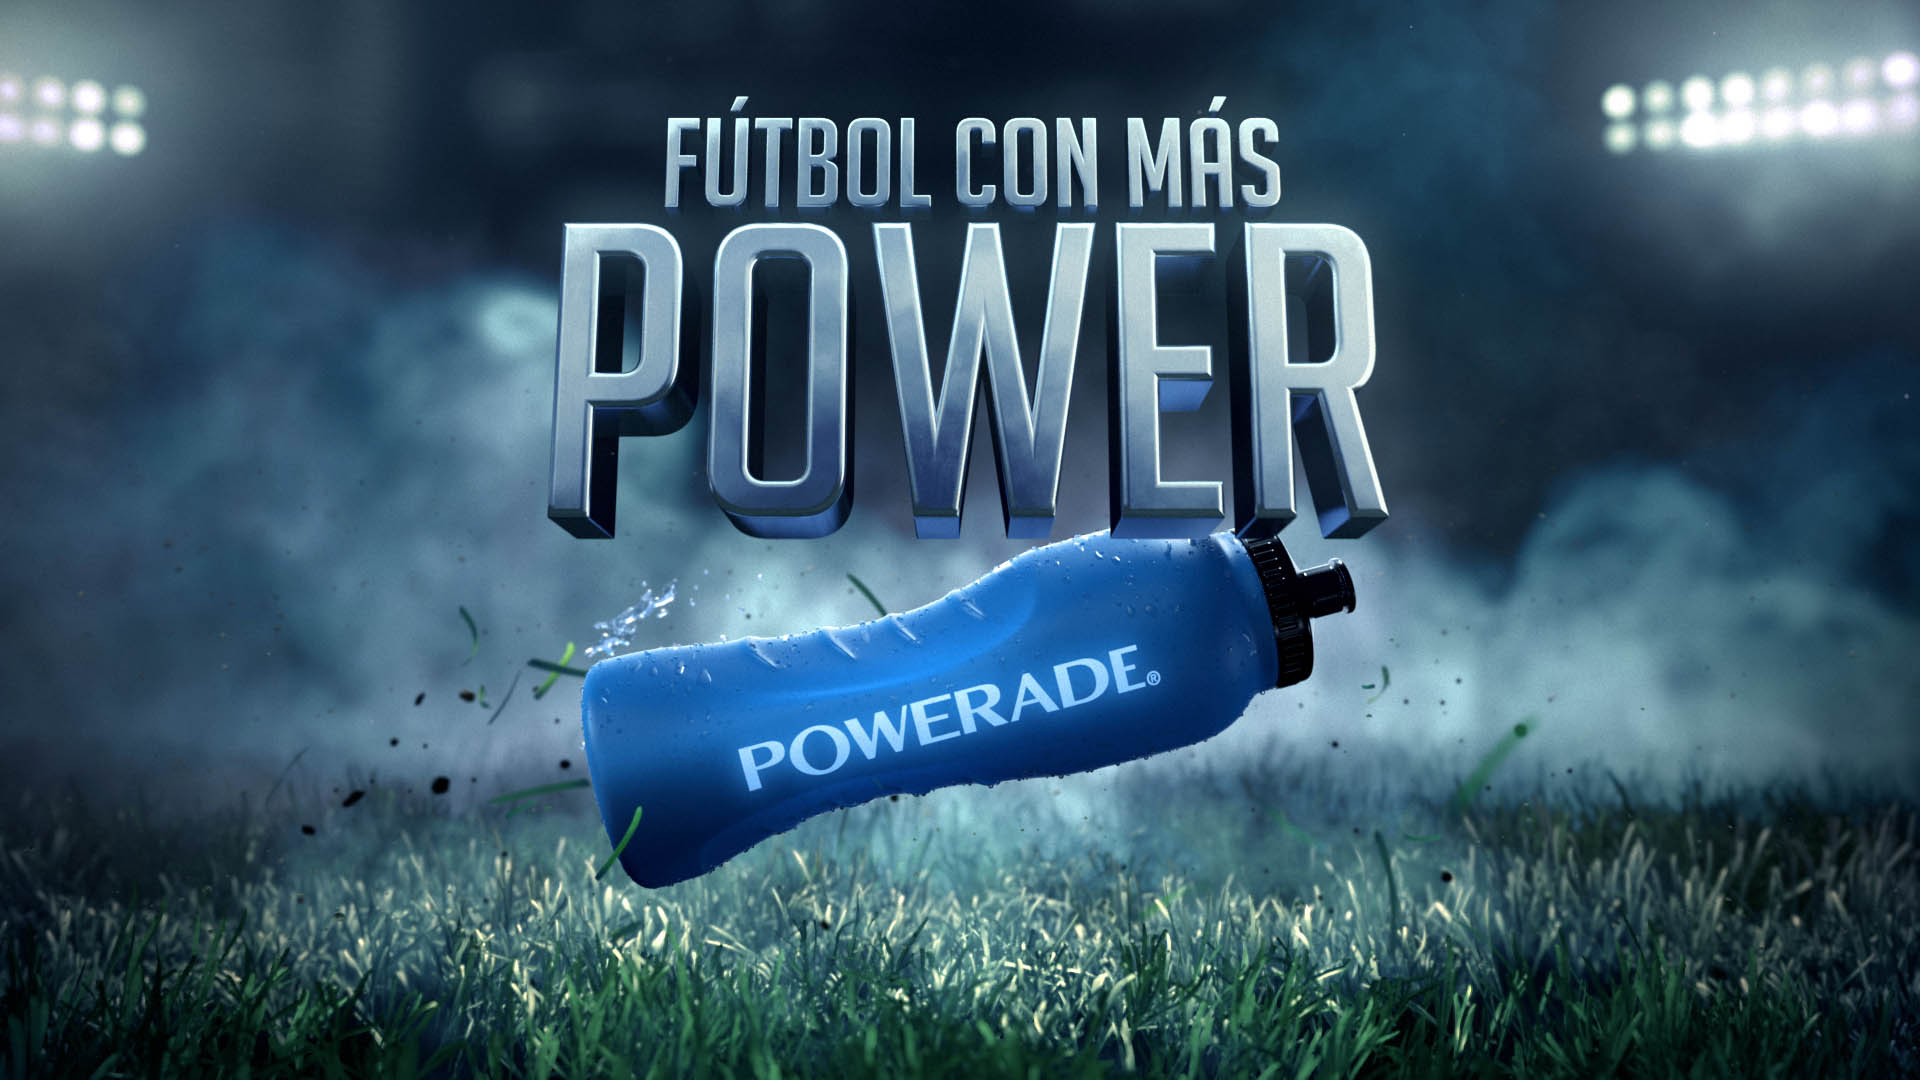 Reklamfilm av Magoo för Powerade - Copa America - Animerad reklamfilm, animerade karaktärer - Karaktärsanimation